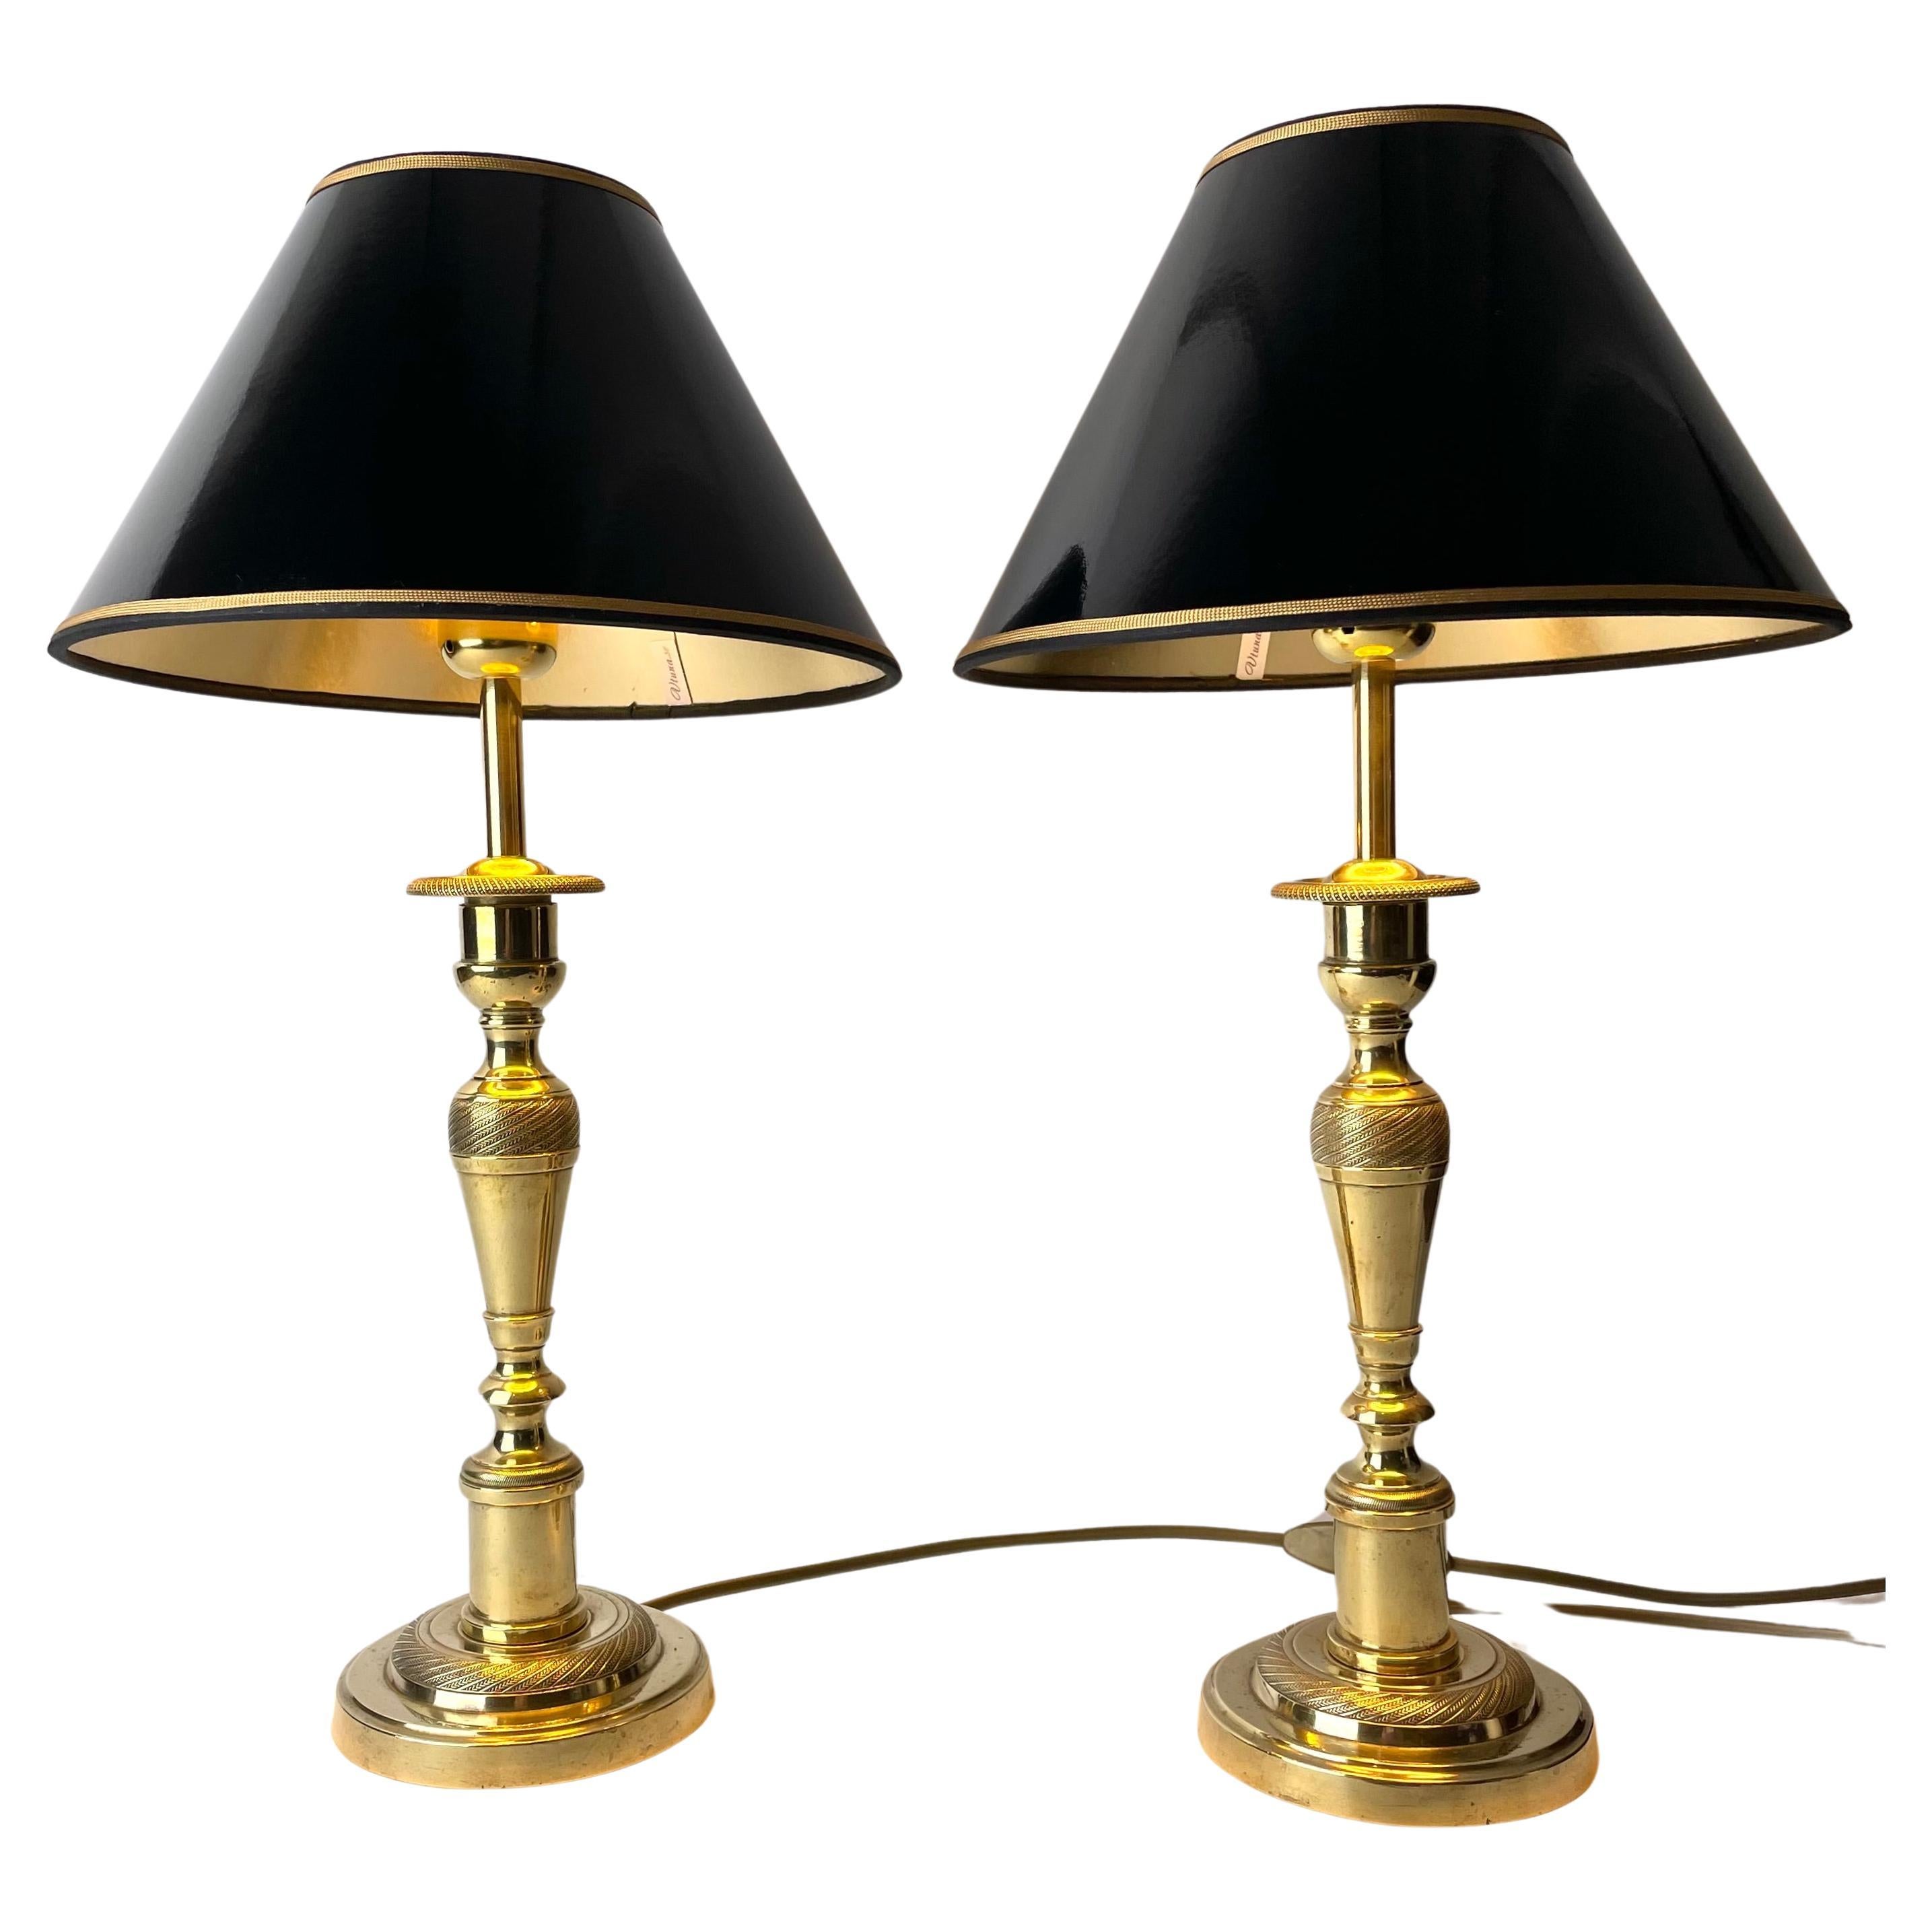 Magnifique paire de lampes de table Empire, chandeliers d'origine des années 1820